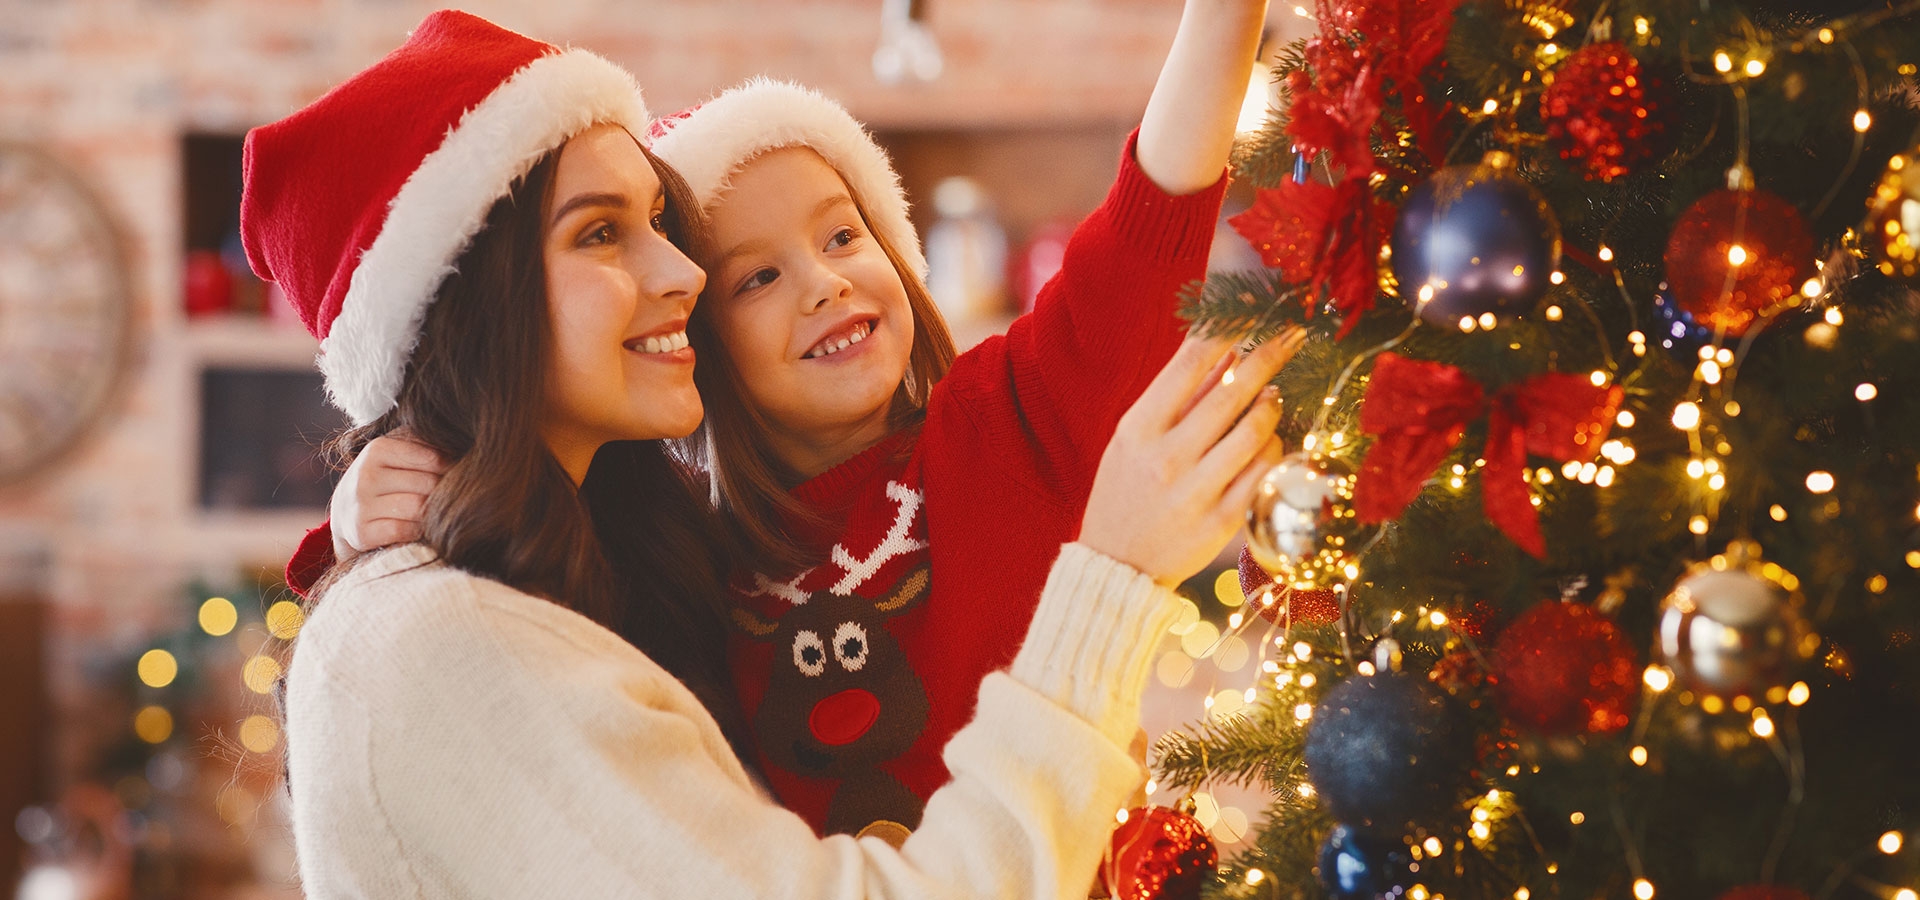 Tuig de kerstboom samen met je gezin op